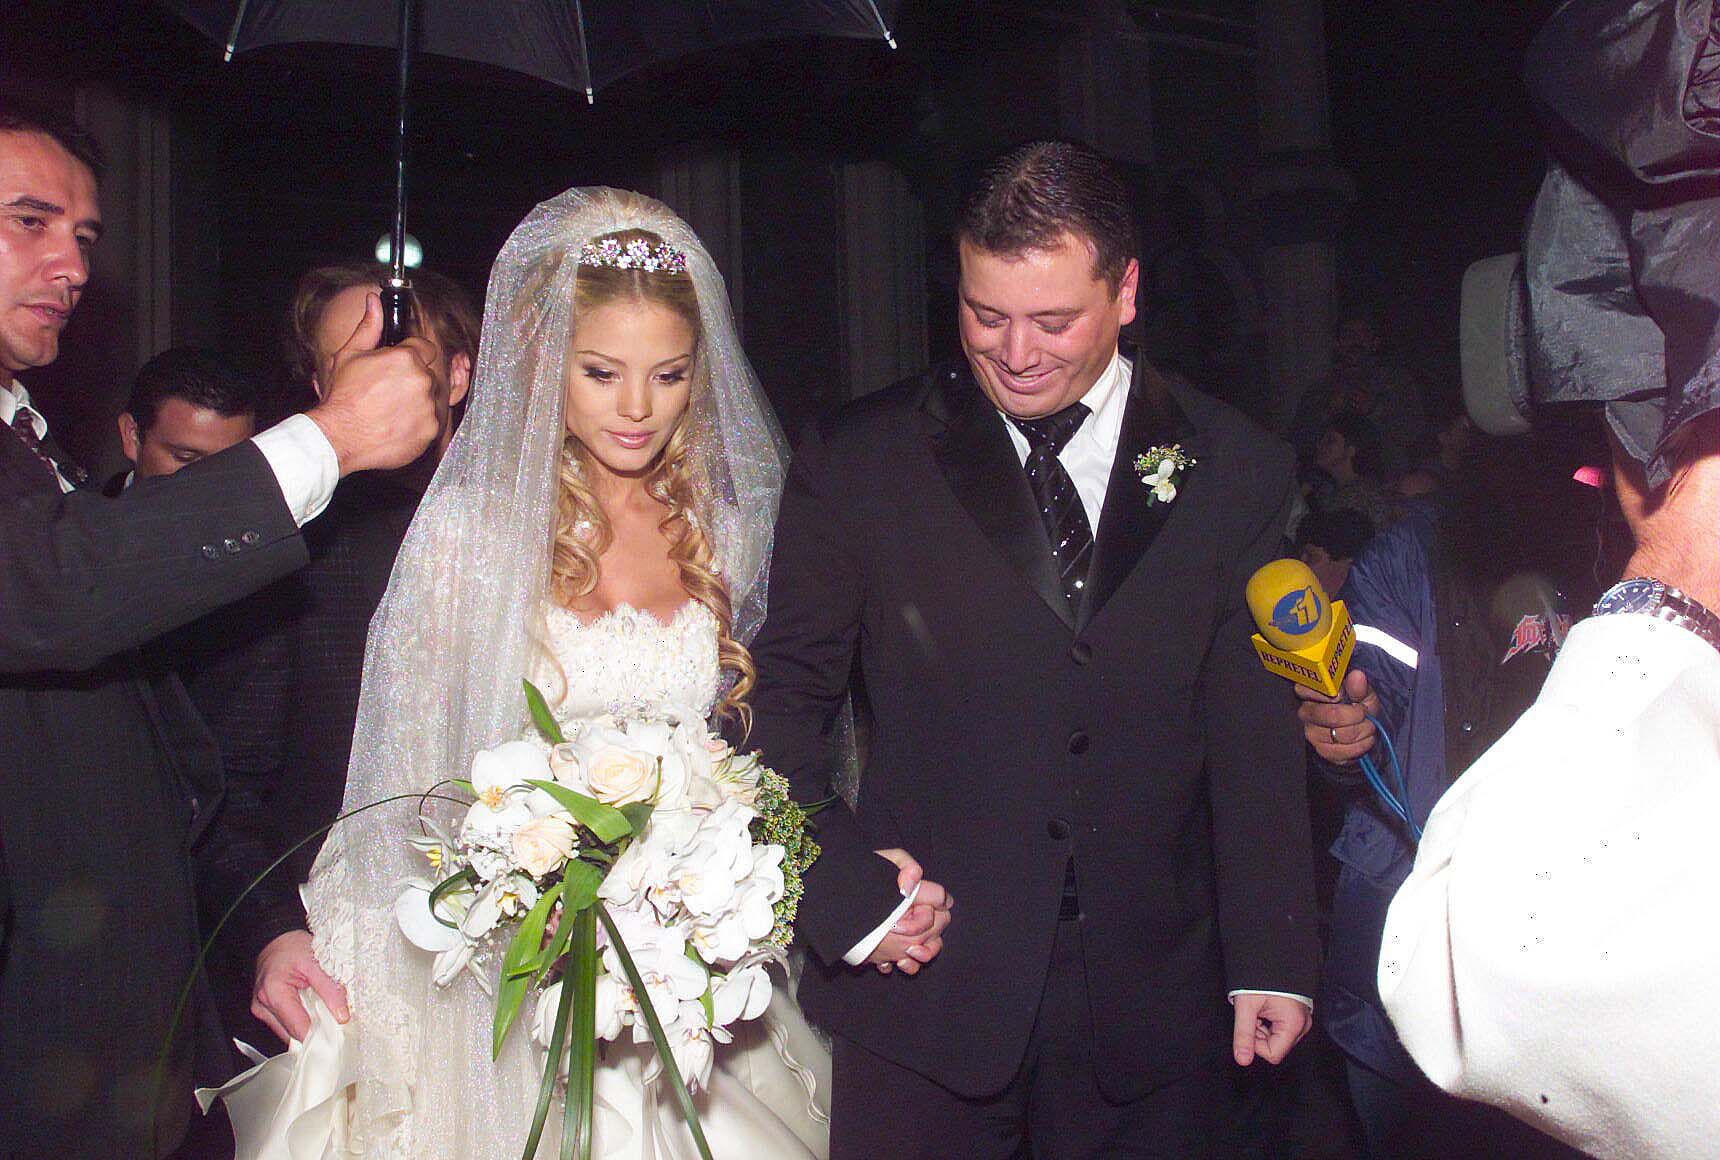 La boda de Carolina Tejera, en la Basílica de Los Angeles, en marzo del 2006, fue toda una celebración. La actriz venezolana de telenovelas se casó con el empresario costarricense, Don Stockwell. Los medios revelaron que el matrimonio costó unos $100.000 y la lista de invitados incluyo varios actores y cantantes famosos.